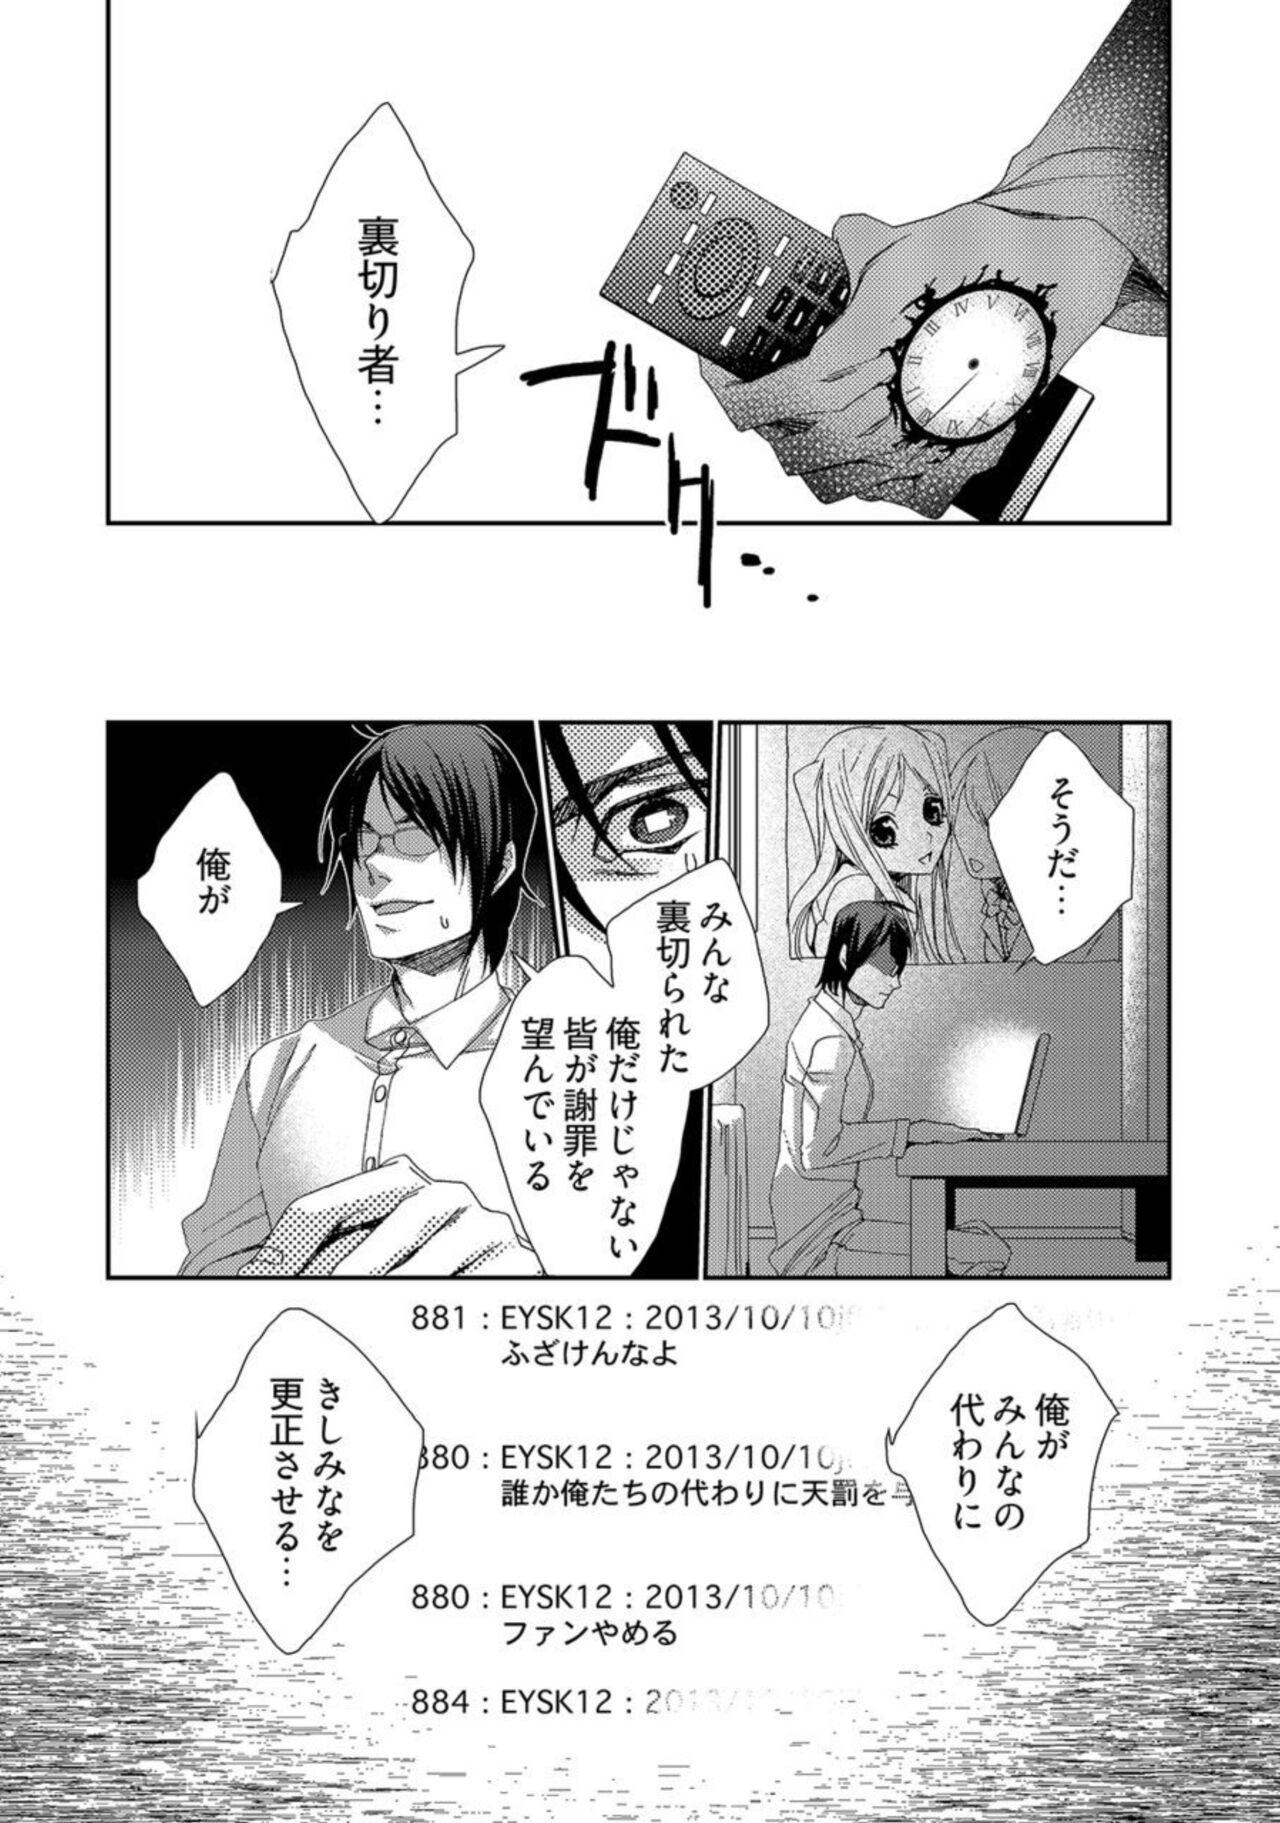 Rabo Jikan o Ayatsuri Mukyoka Tanetsuke - Shojo kara Ninshin made Mugen Loop Vol. 2 Gets - Page 4